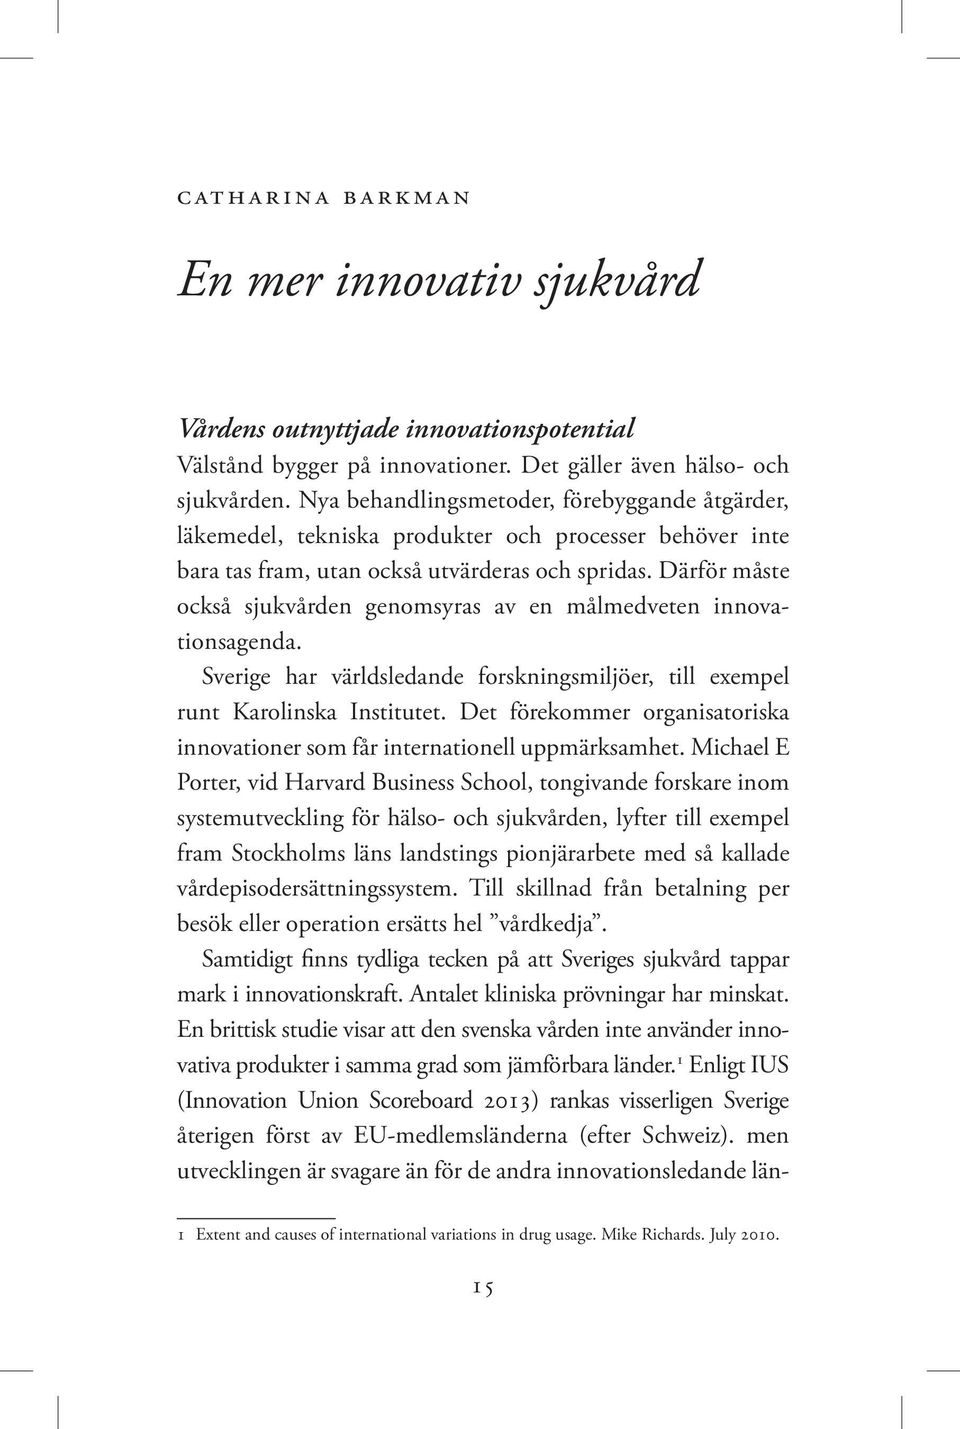 Därför måste också sjukvården genomsyras av en målmedveten innovationsagenda. Sverige har världsledande forskningsmiljöer, till exempel runt Karolinska Institutet.